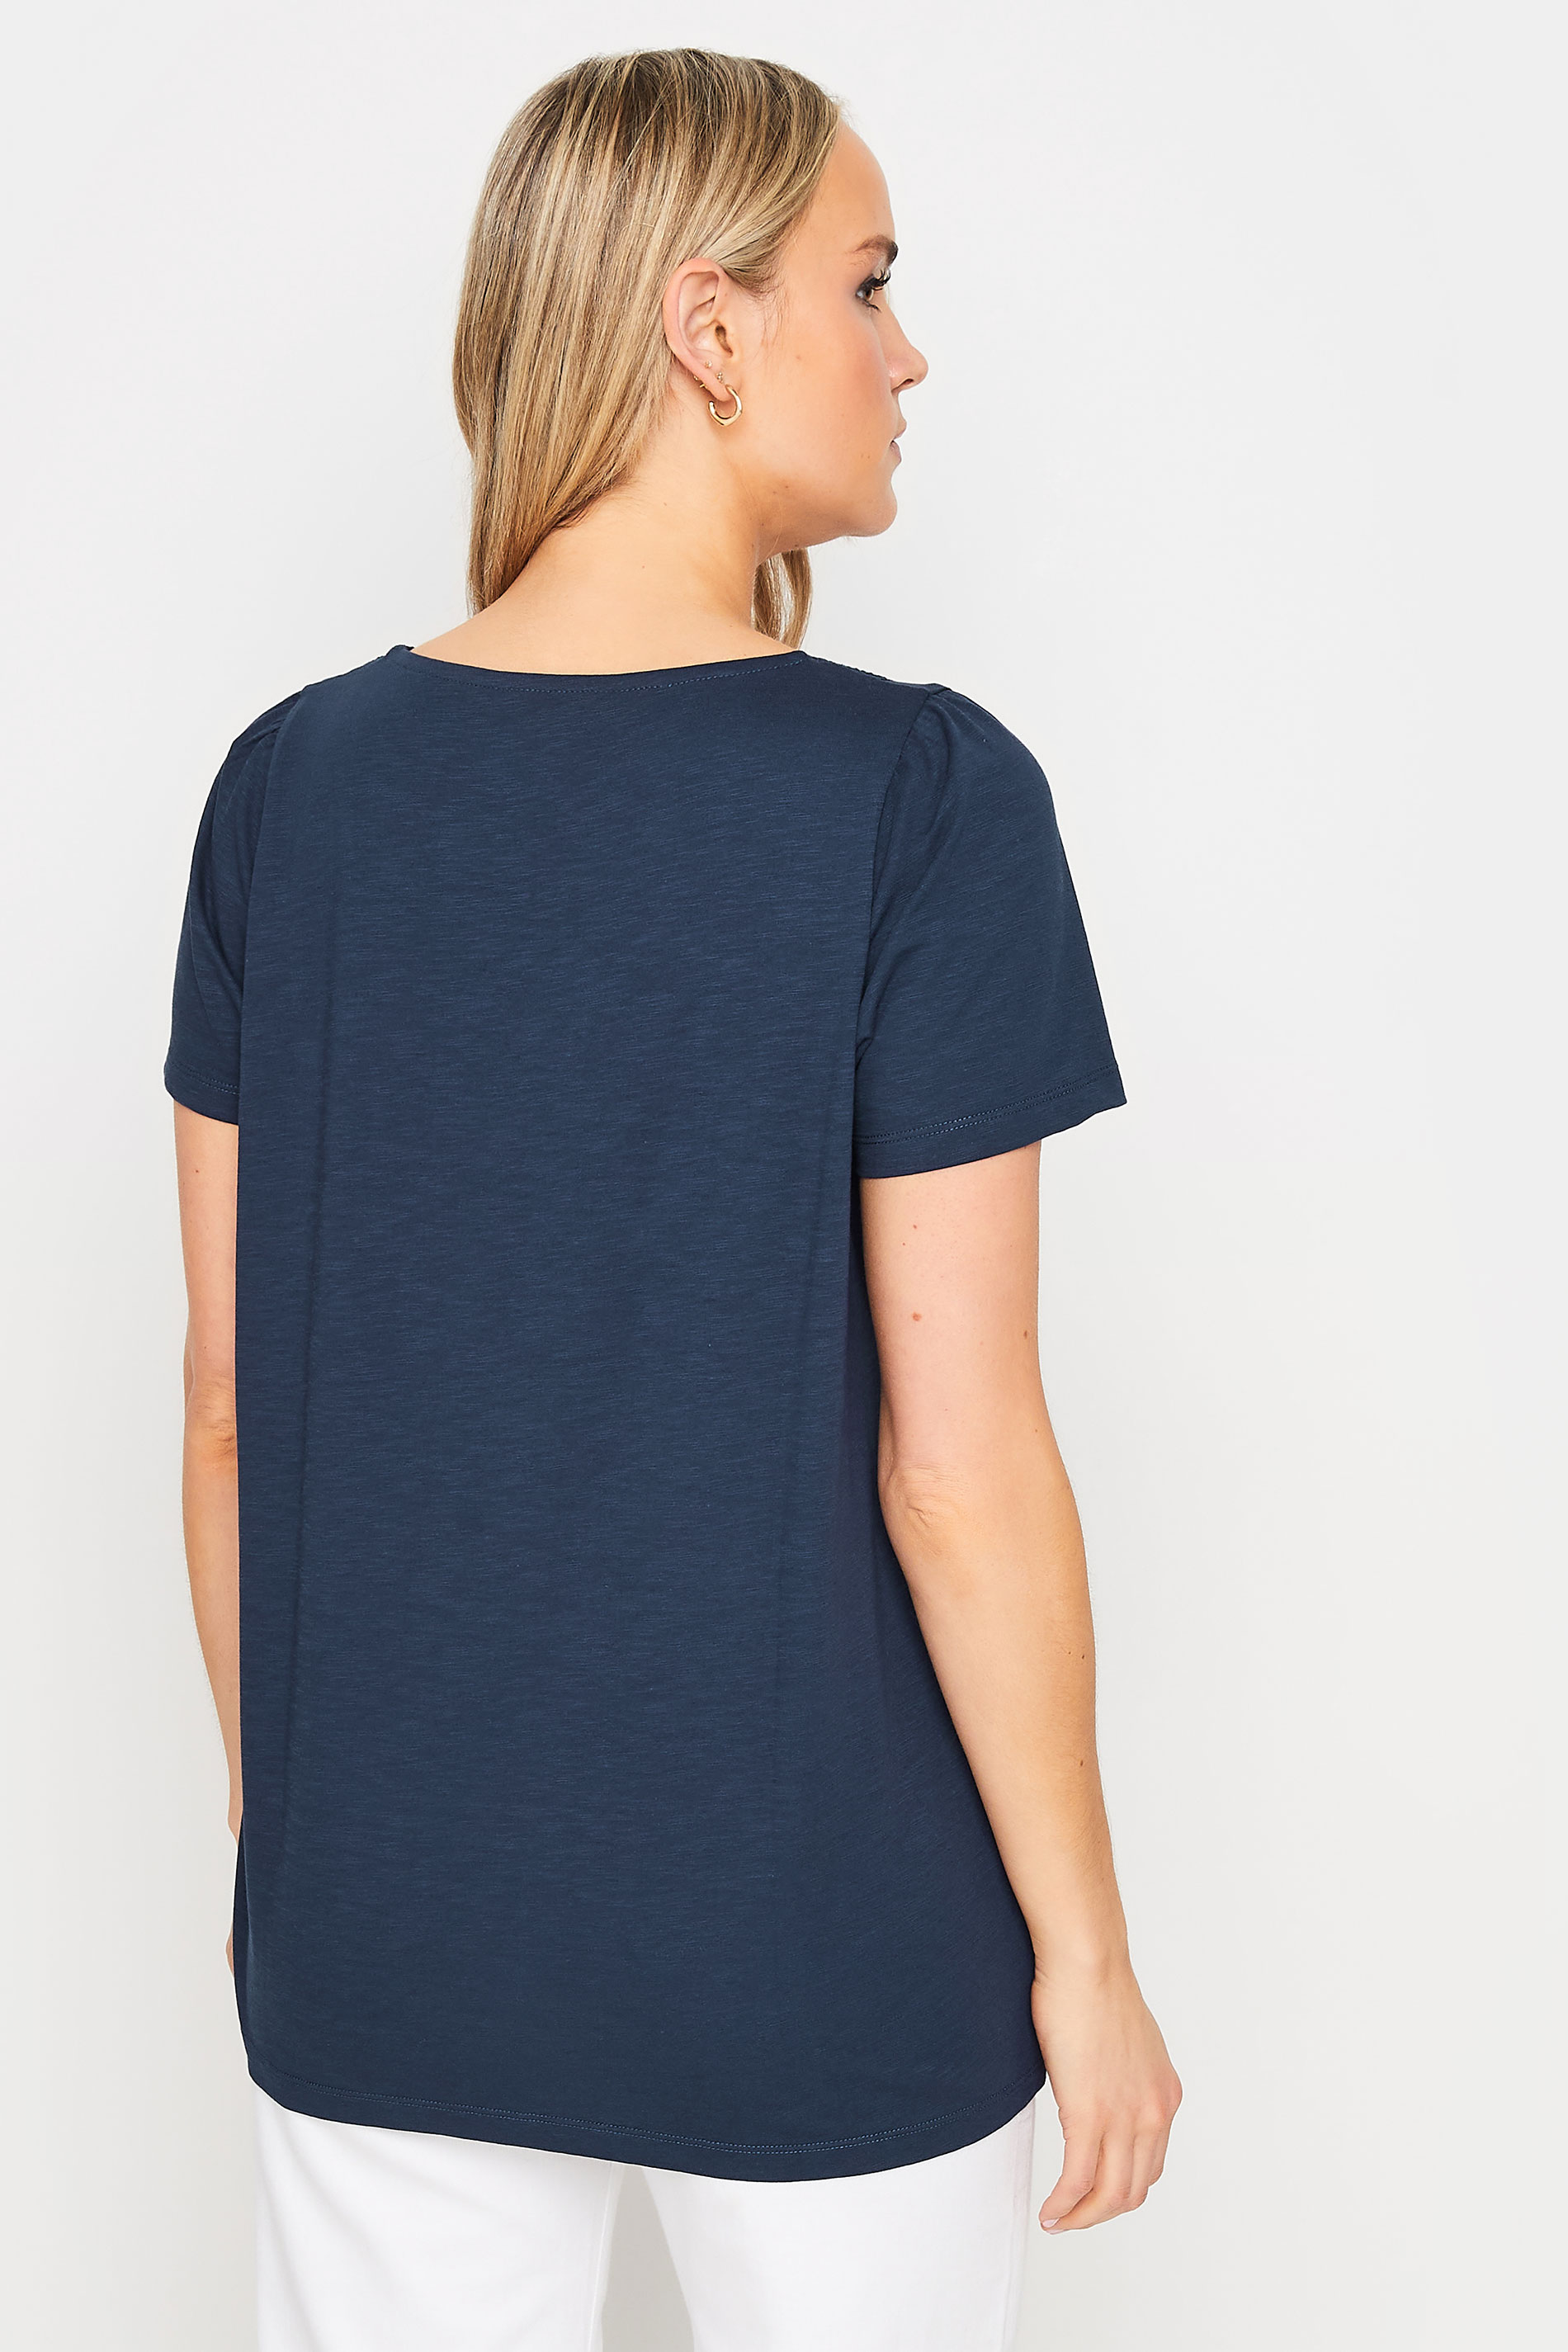 LTS Tall Women's Navy Blue Crochet Trim T-Shirt | Long Tall Sally 3